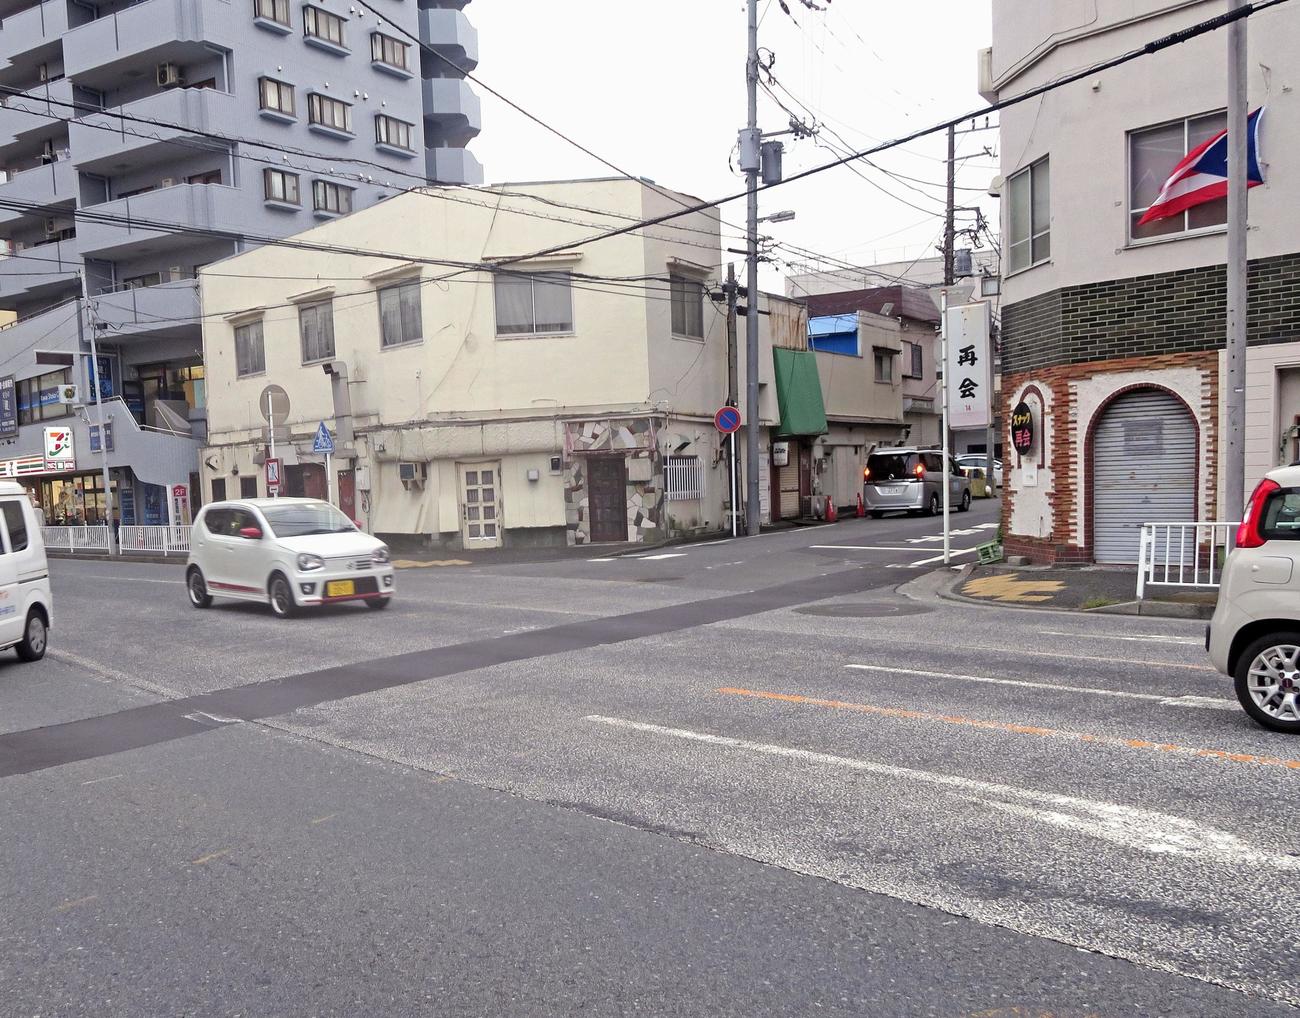 仲本工事さんが乗用車にはねられた交差点付近＝18日午後4時40分、横浜市西区（共同）